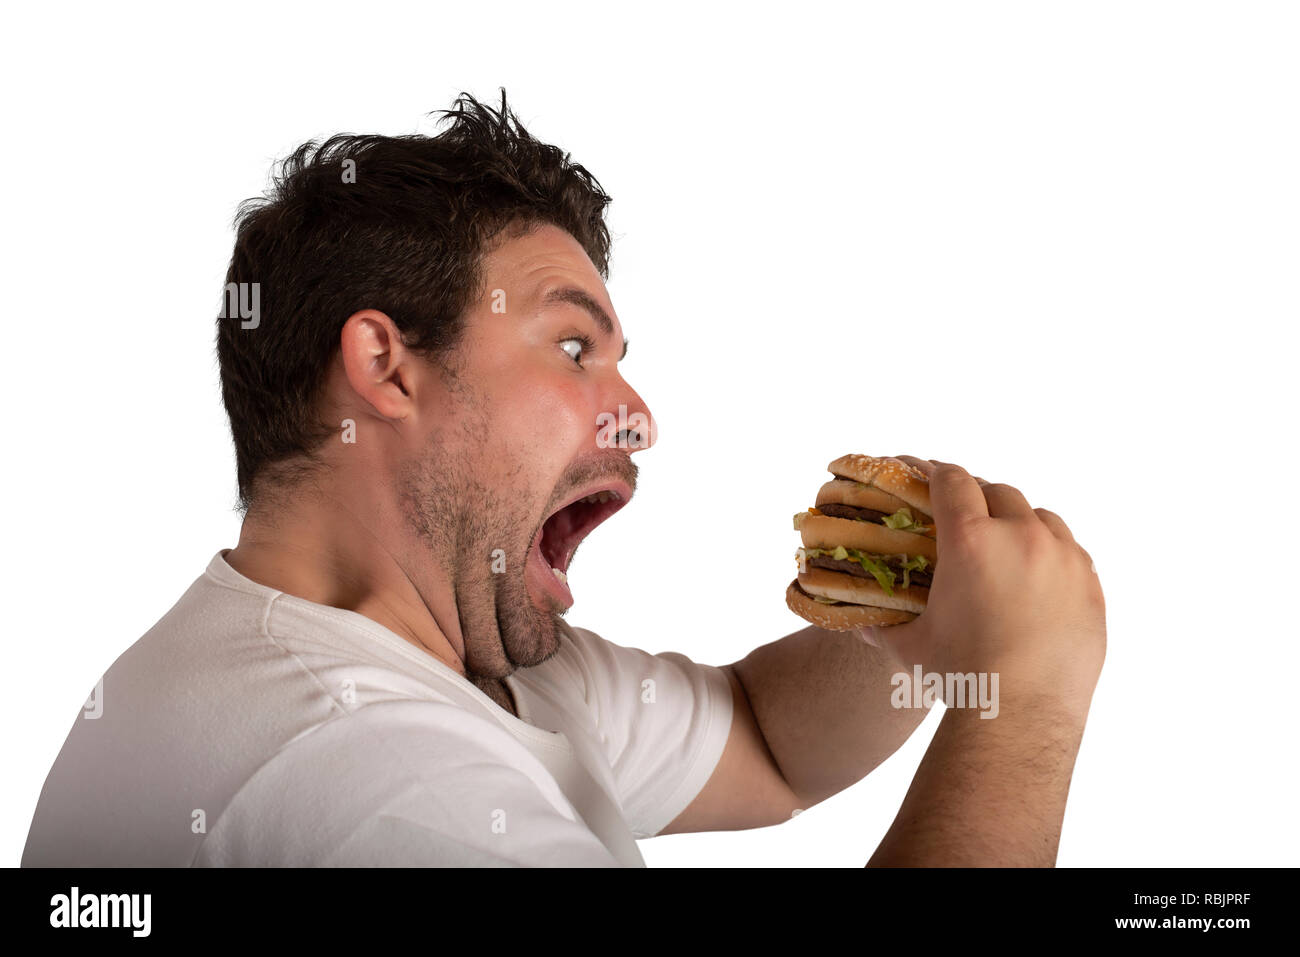 Unersättlich und hungrigen Mann essen ein Sandwich Stockfoto